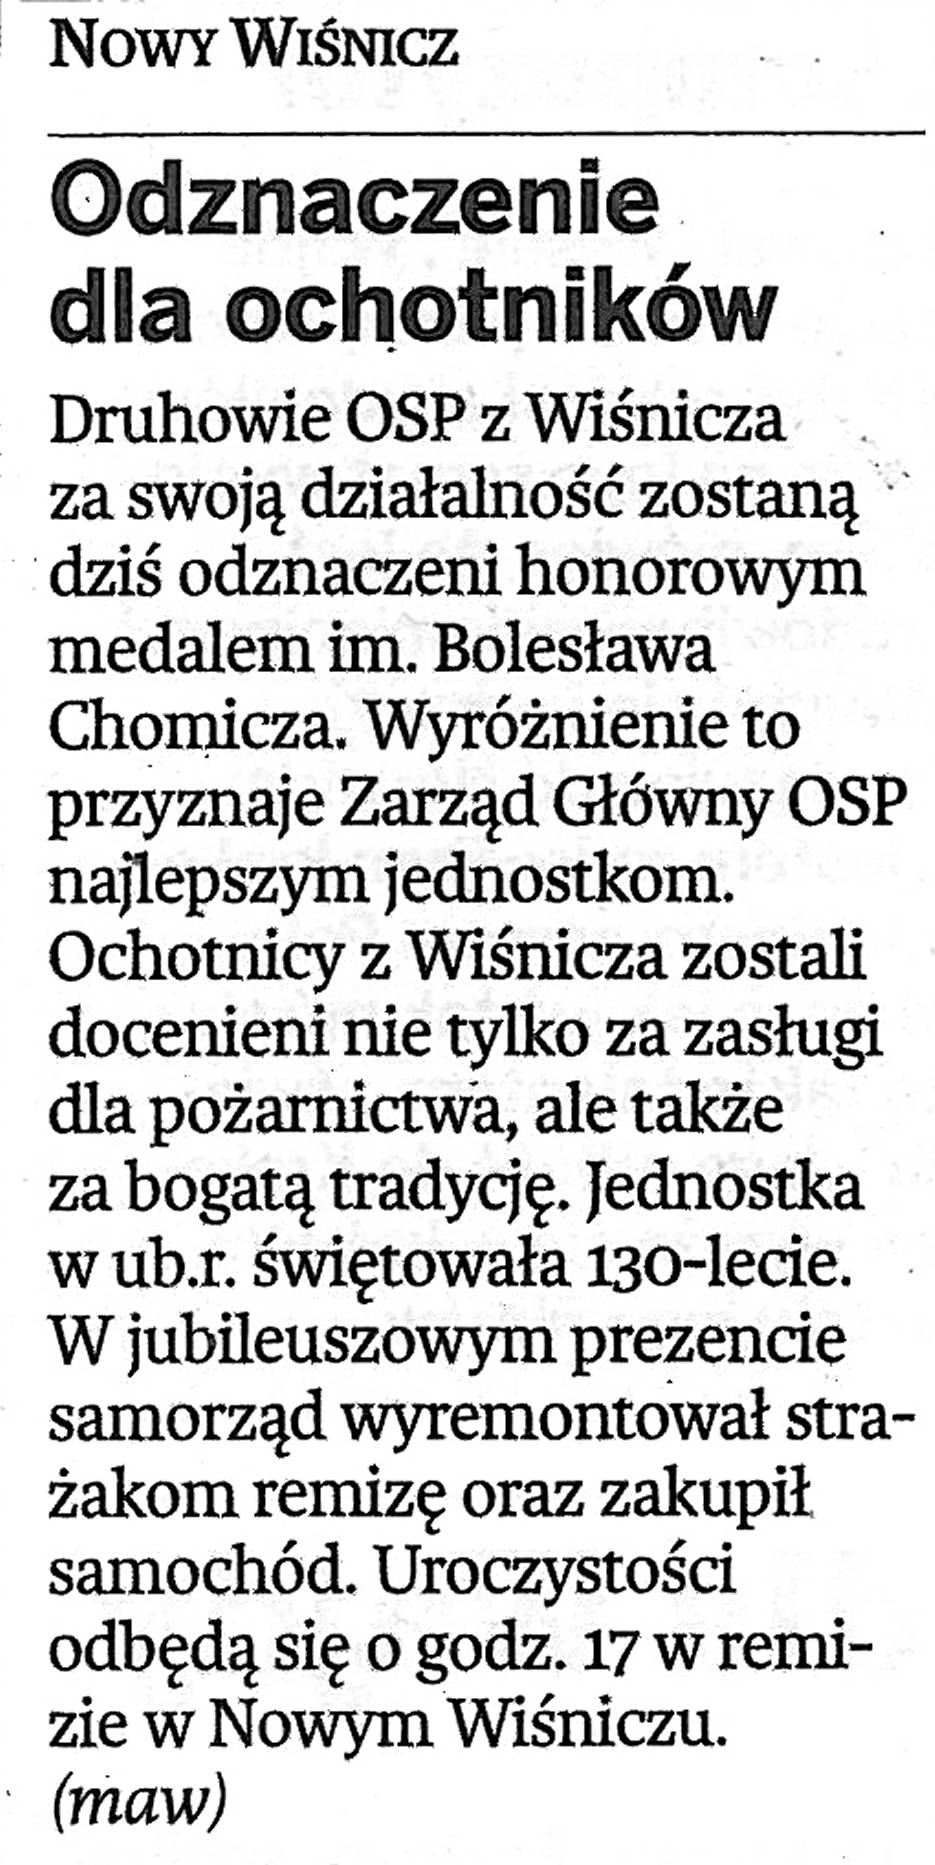 Odznaczenie dla ochotników - Gazeta Krakowska - 06.03.2011